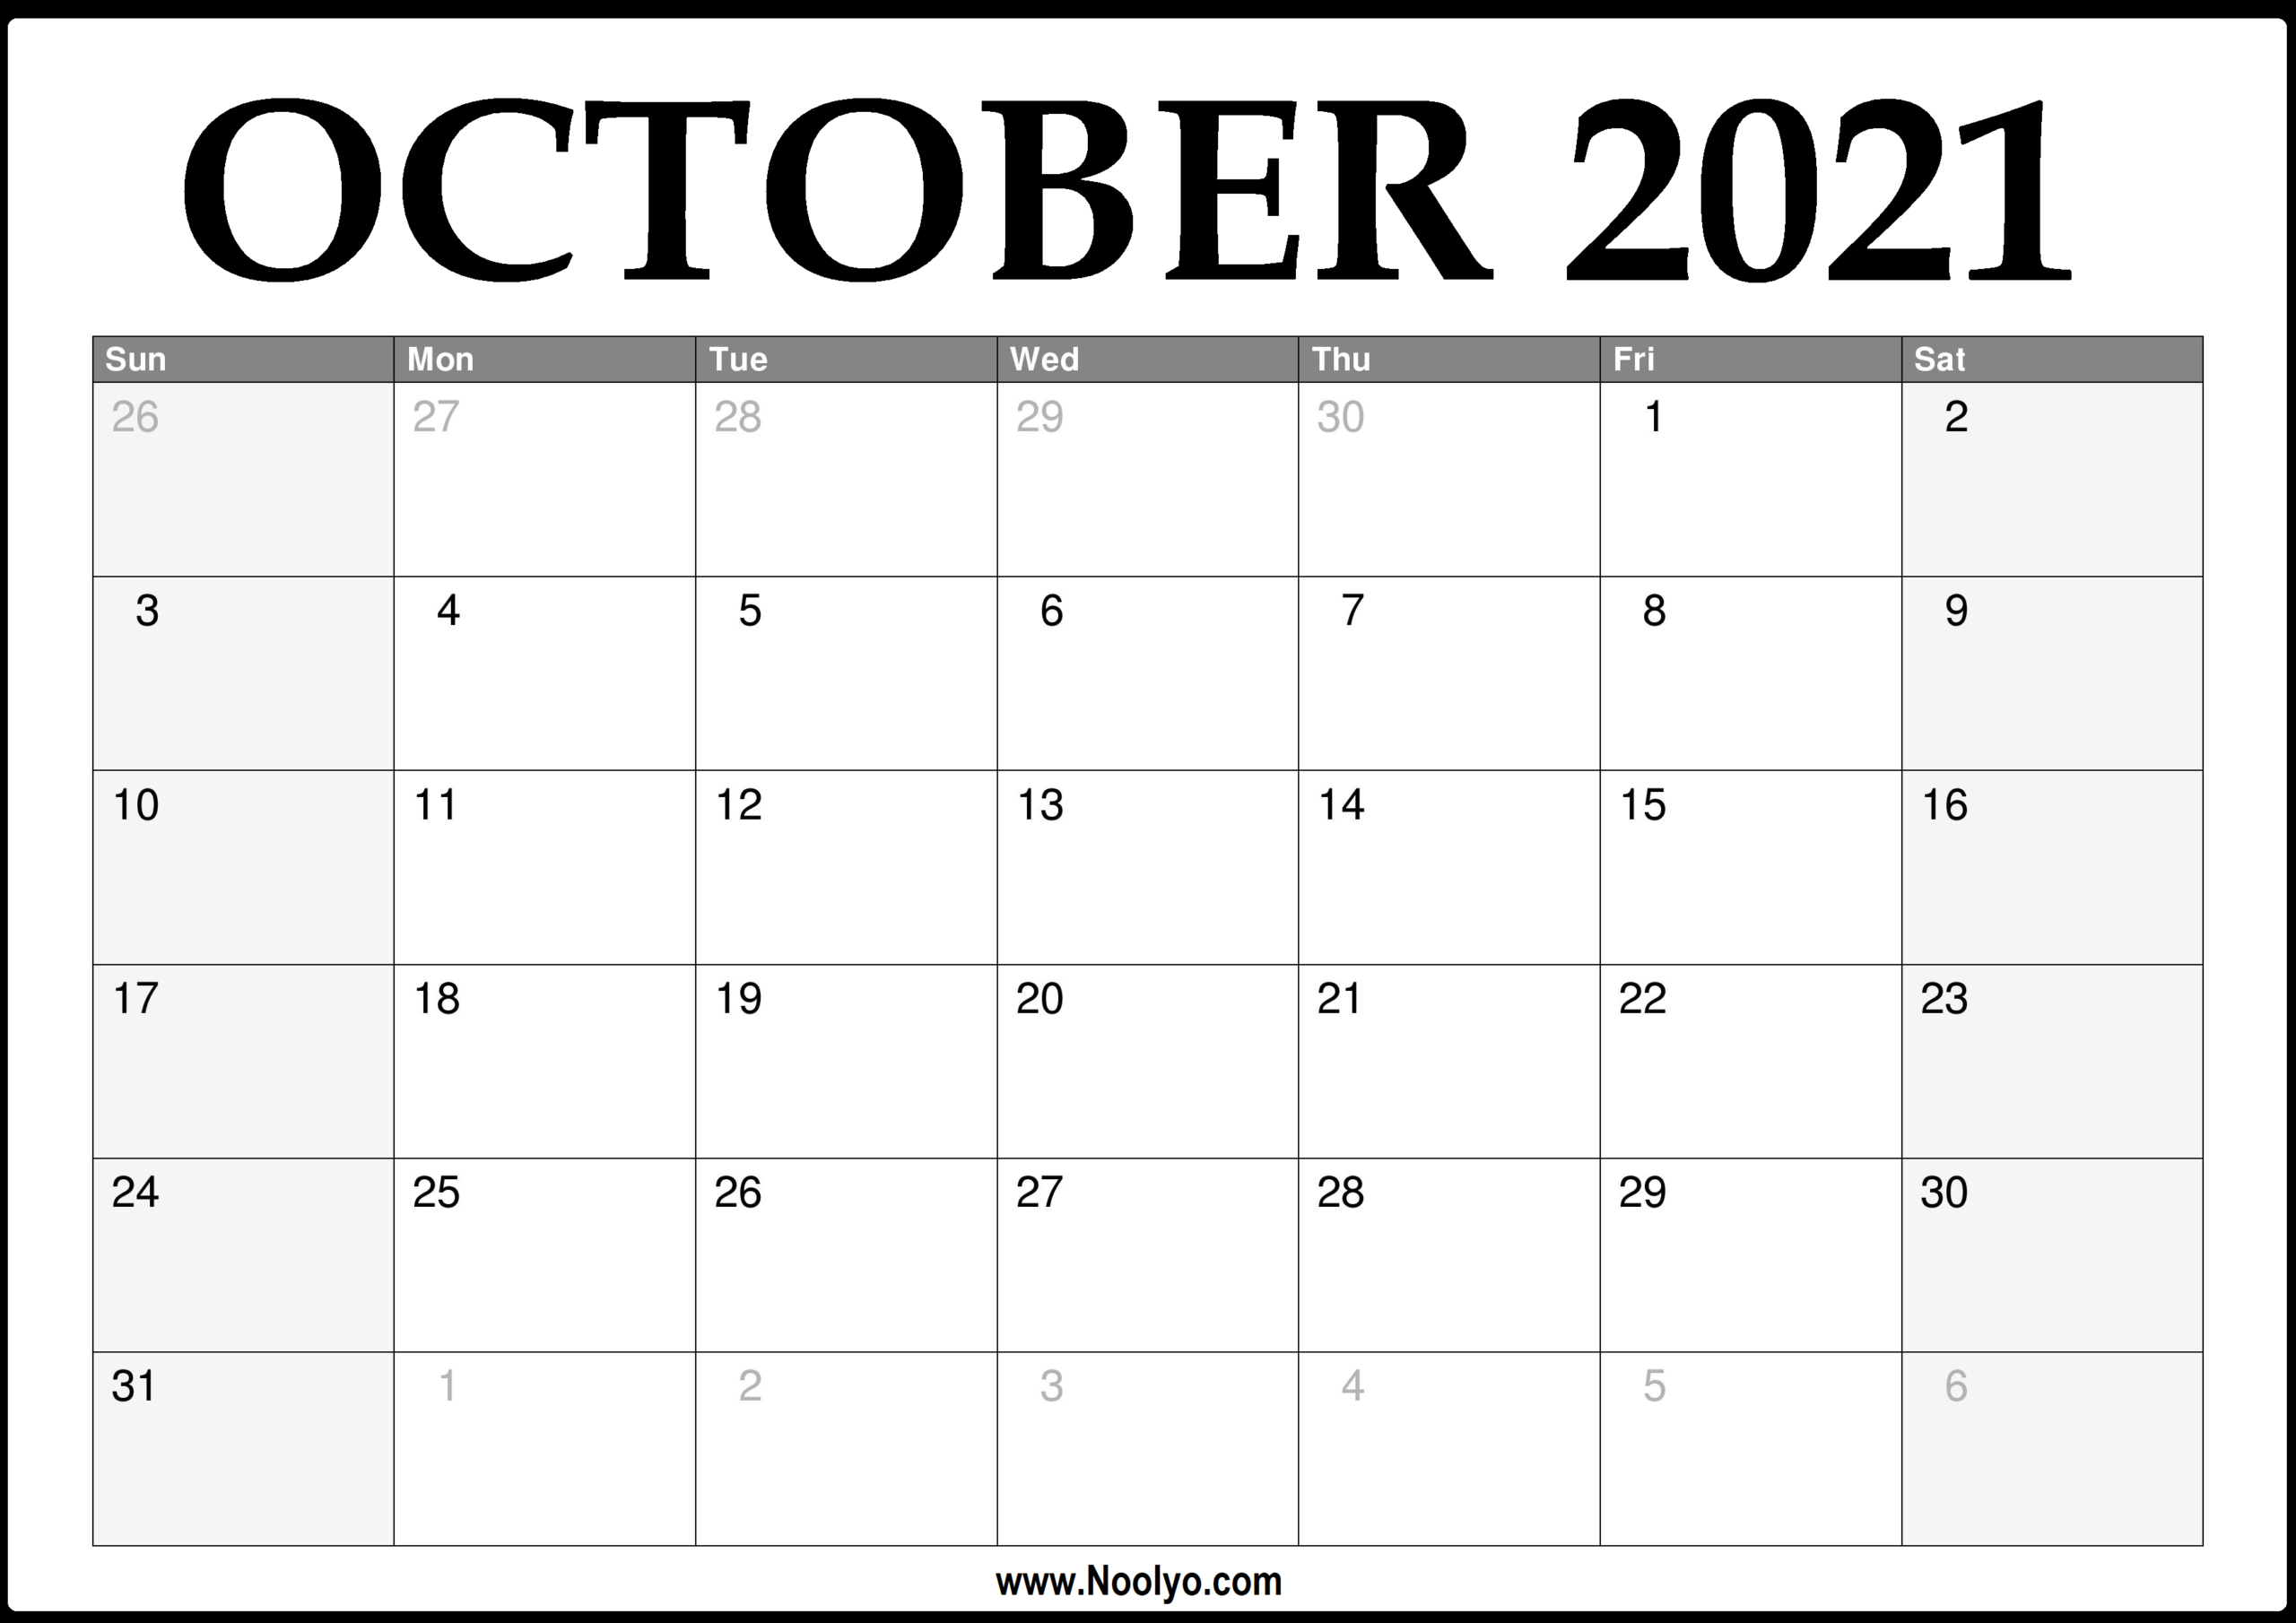 October Monthly Calendar 2021 | 2021 Calendar